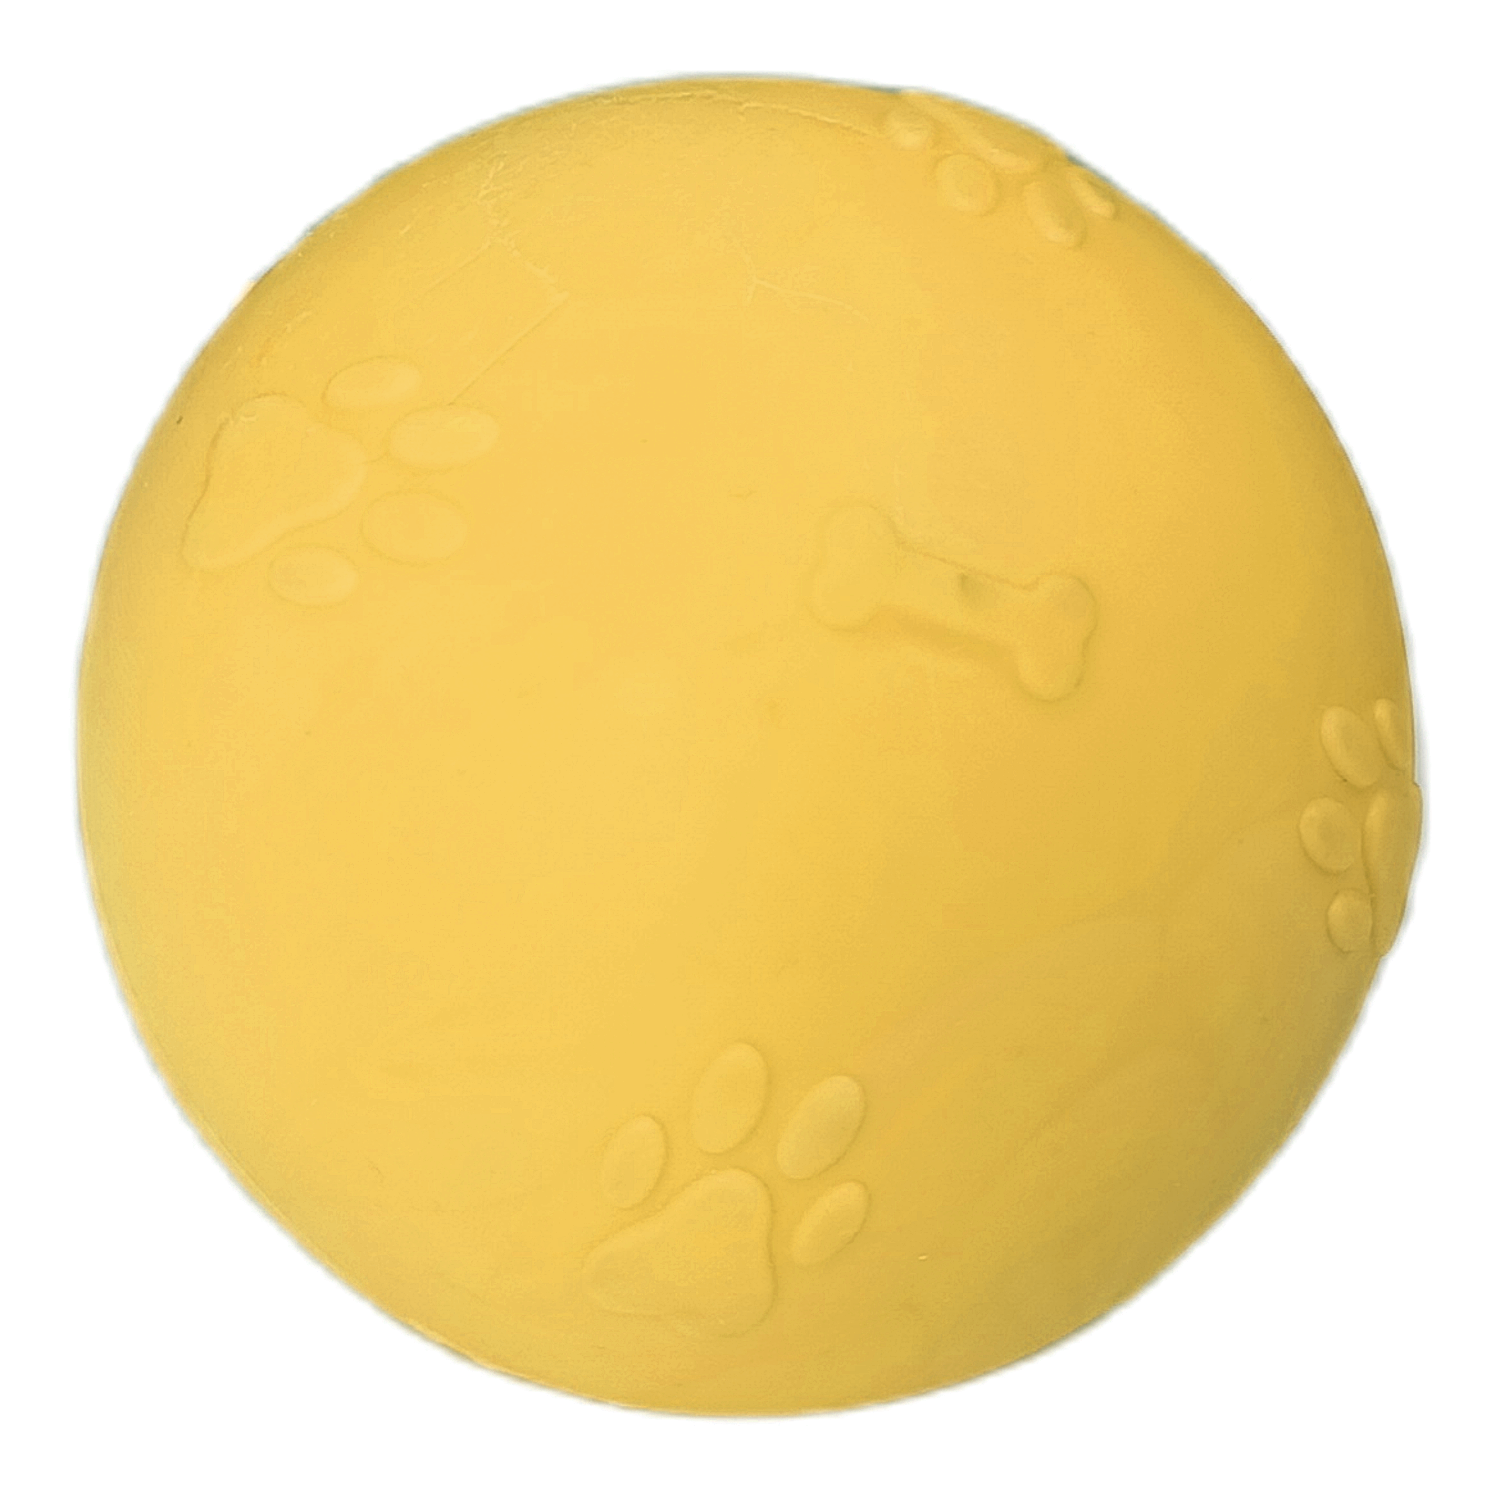 CLZ205 Pati Desenli Sert Köpek Oyun Topu 7 cm Medium Sarı